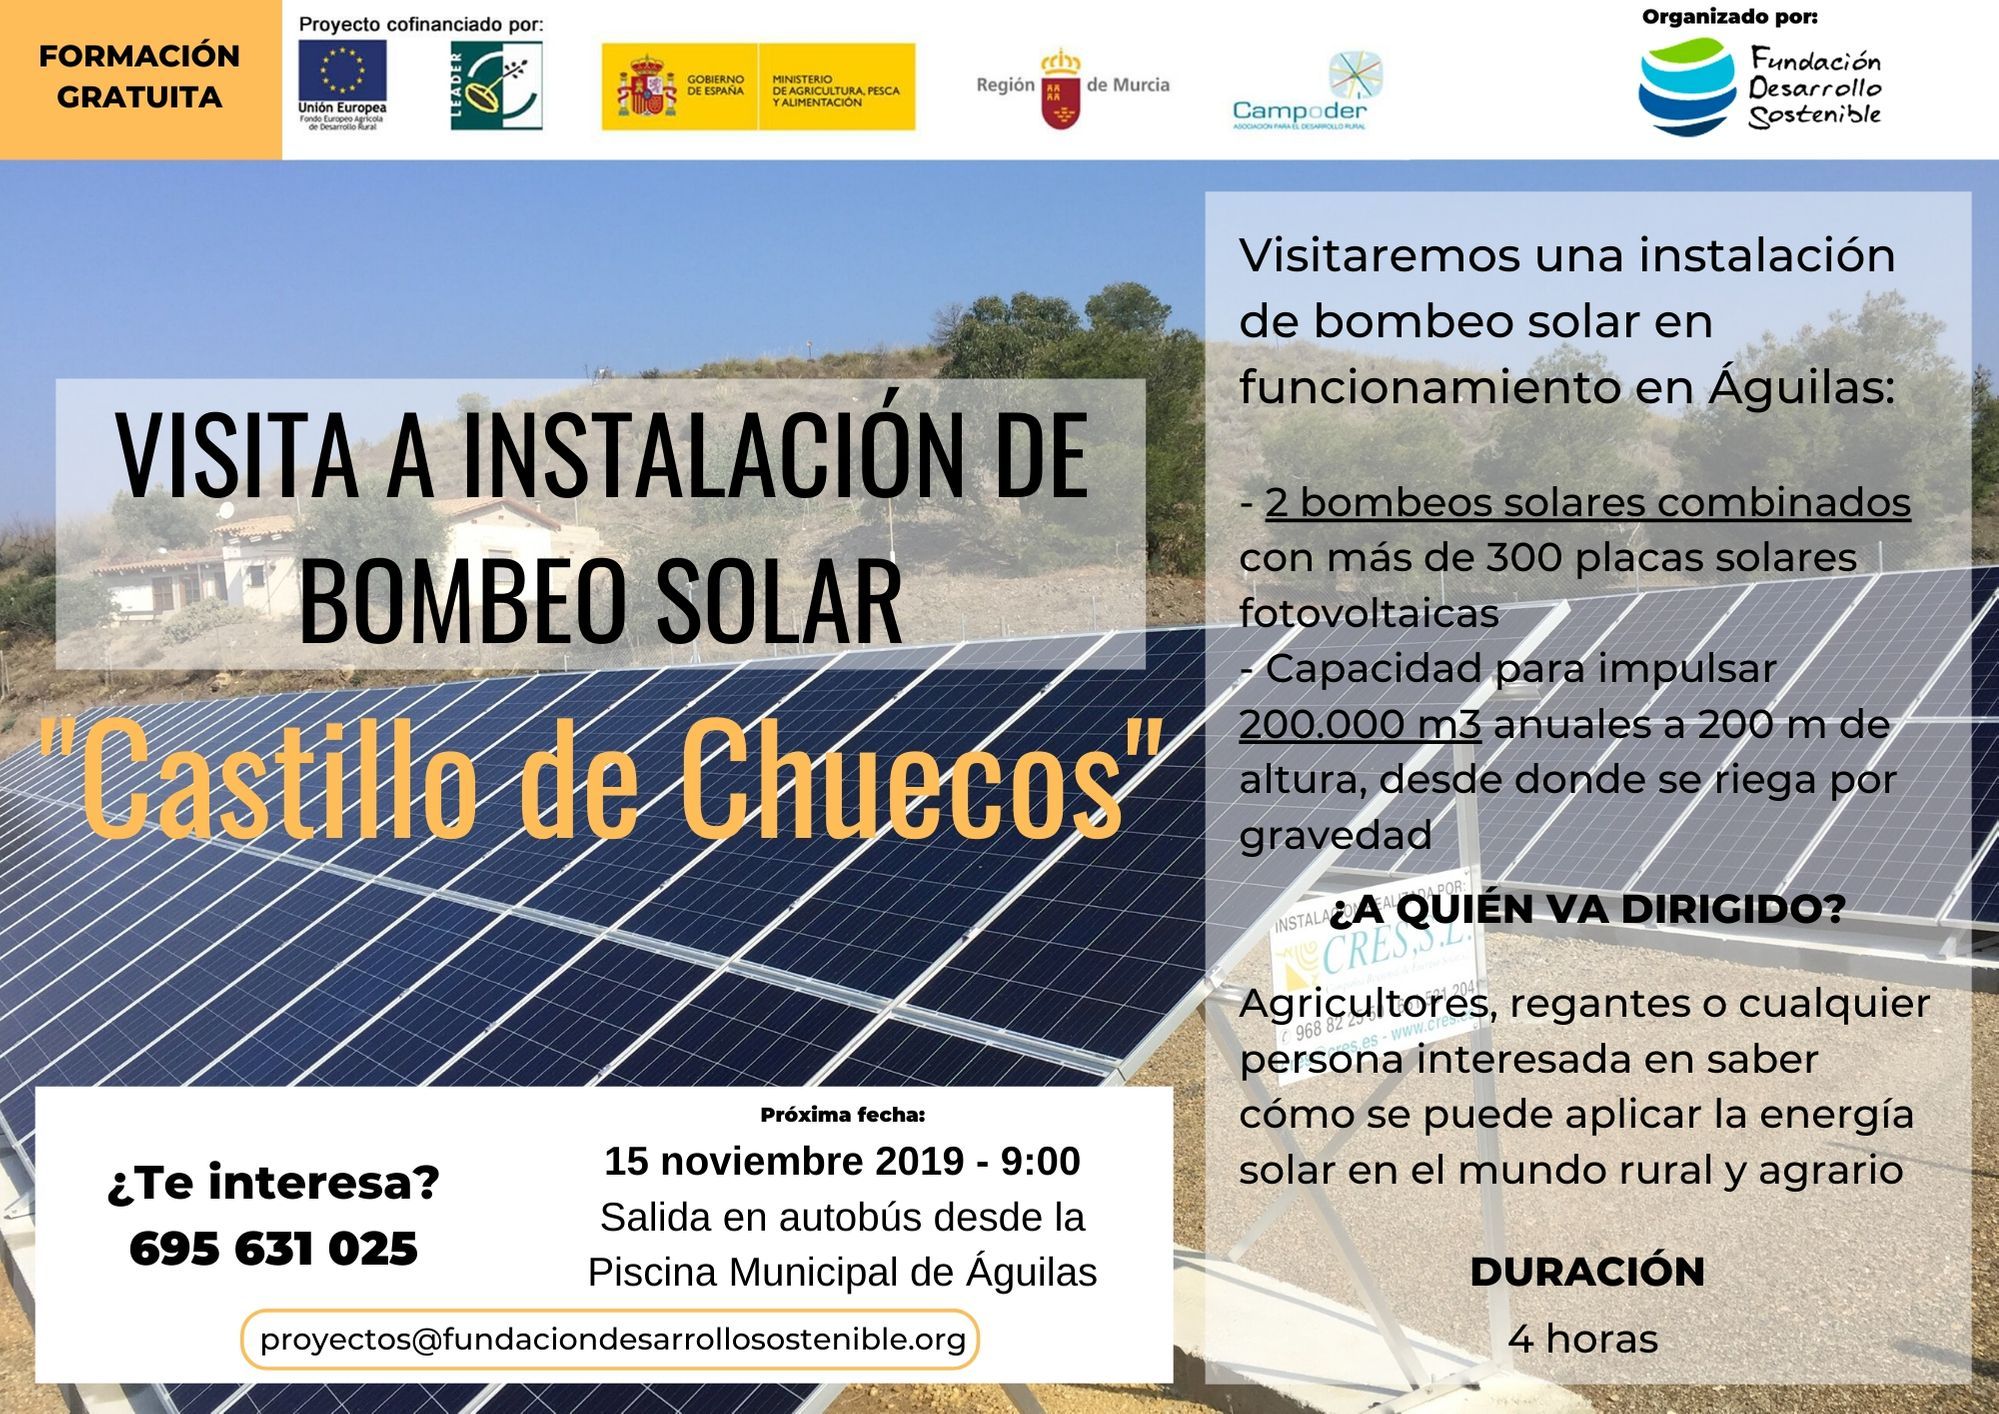 15 noviembre Visita Castillo Chuecos - Energía Solar en el Mundo Rural y Agrario